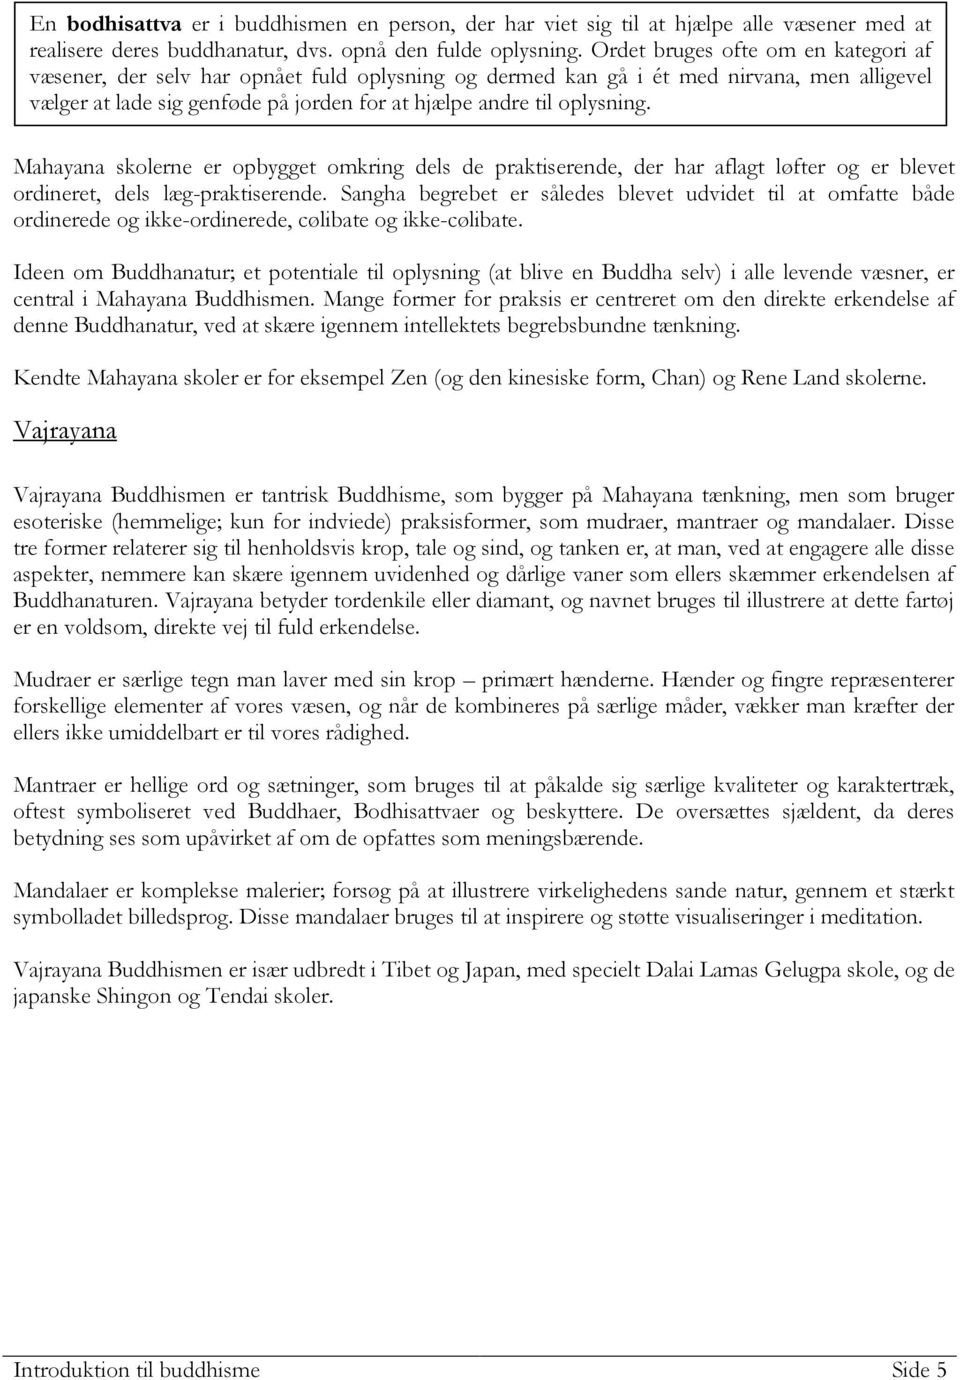 Introduktion til buddhisme - PDF Gratis download